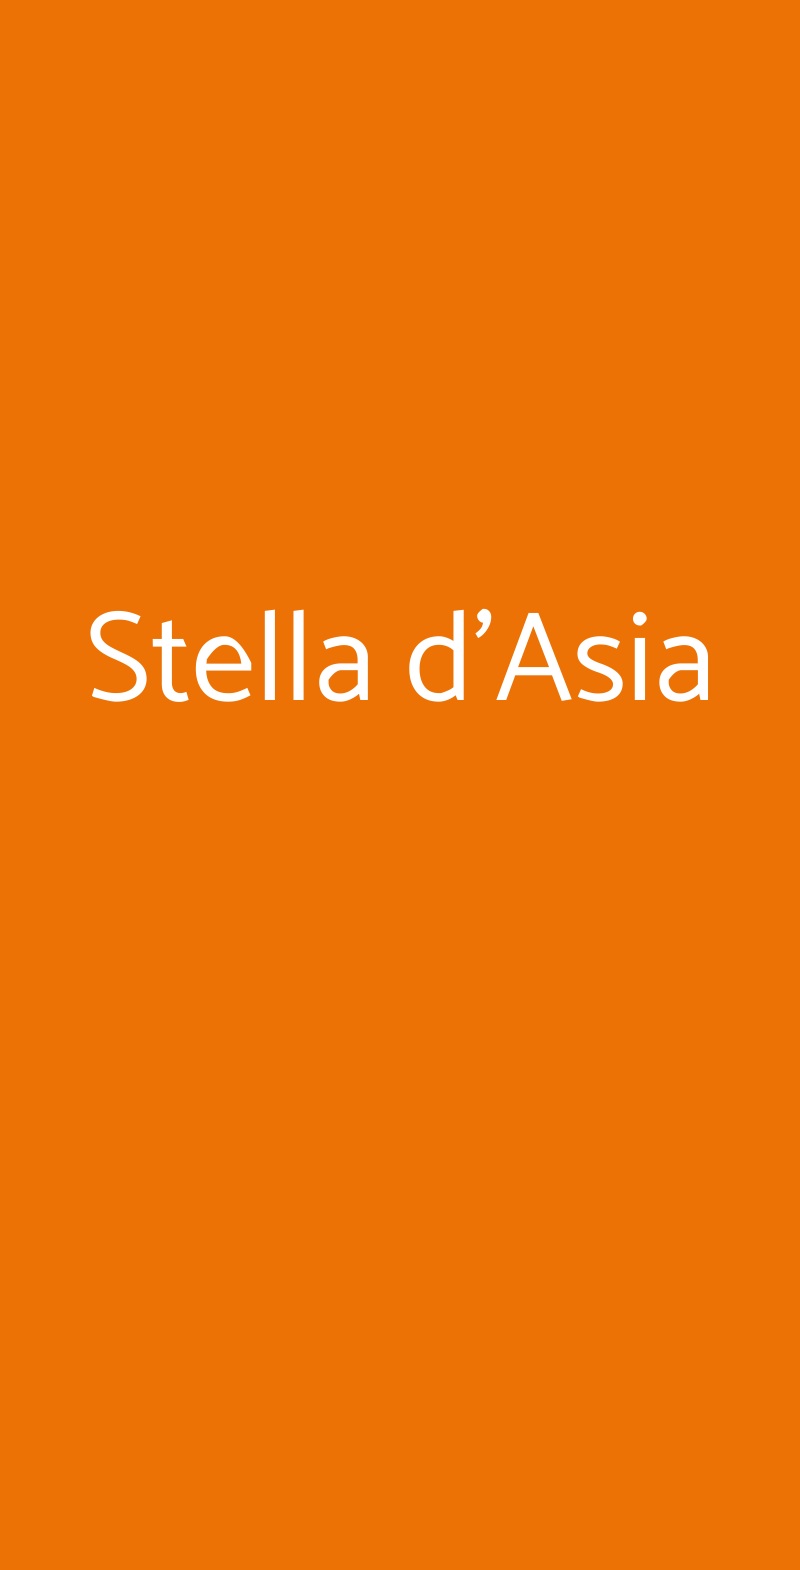 Stella d'Asia Milano menù 1 pagina